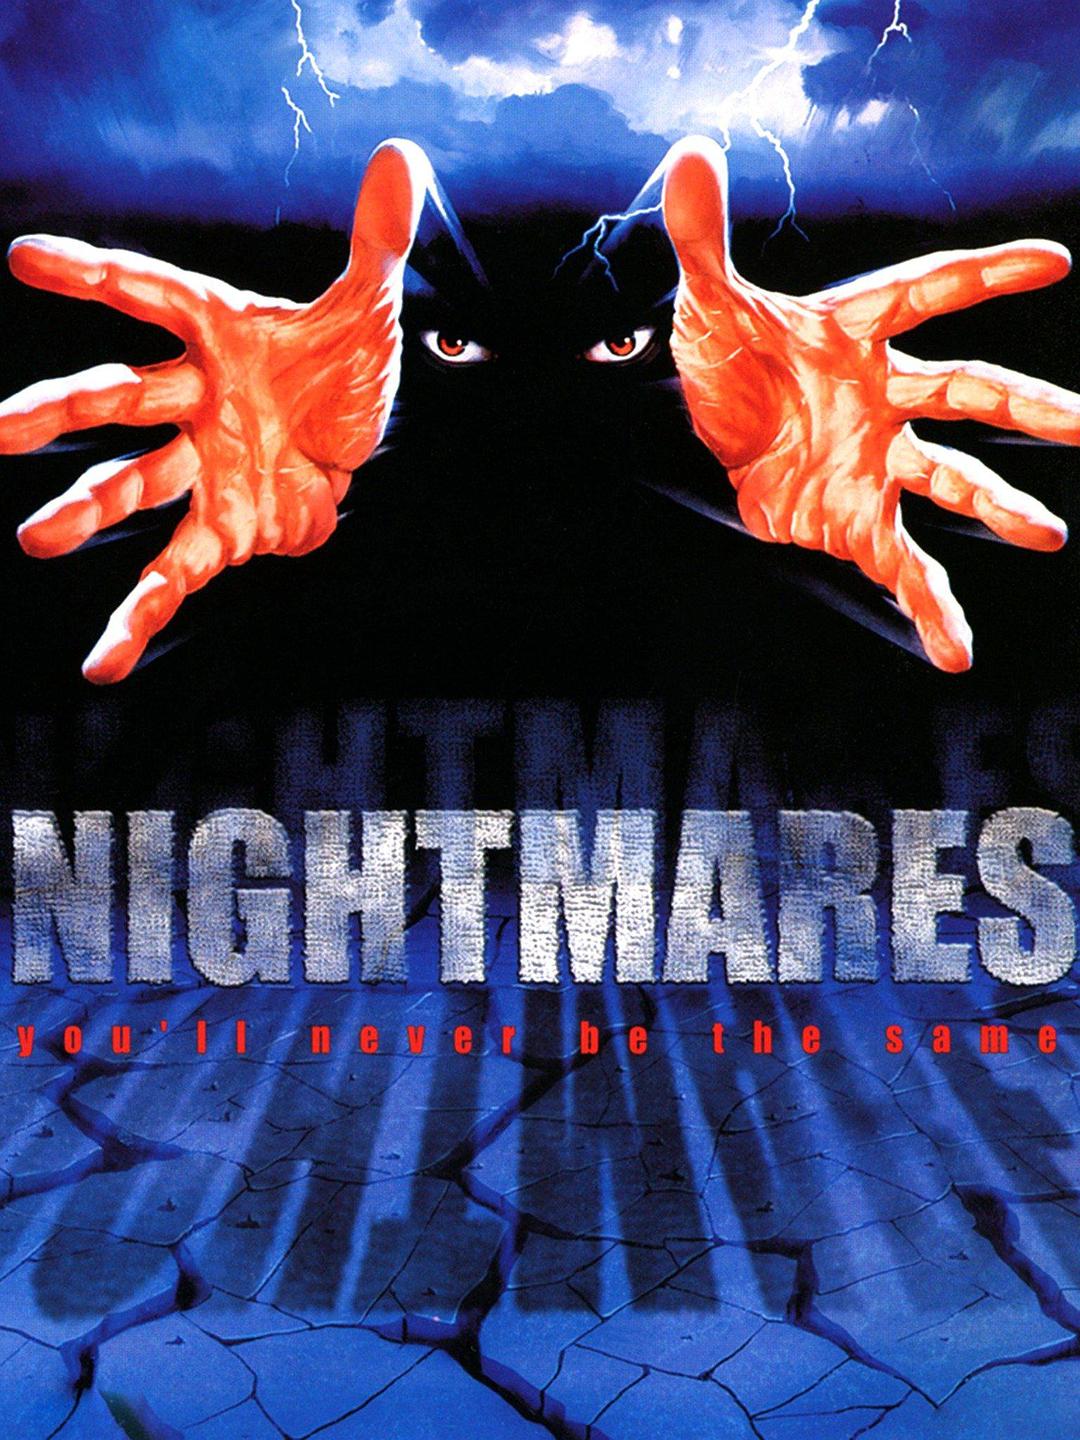 鬼灵精怪.Nightmares.1983.FS.1080p.BluRay.x264-WATCHABLE 6.99GB